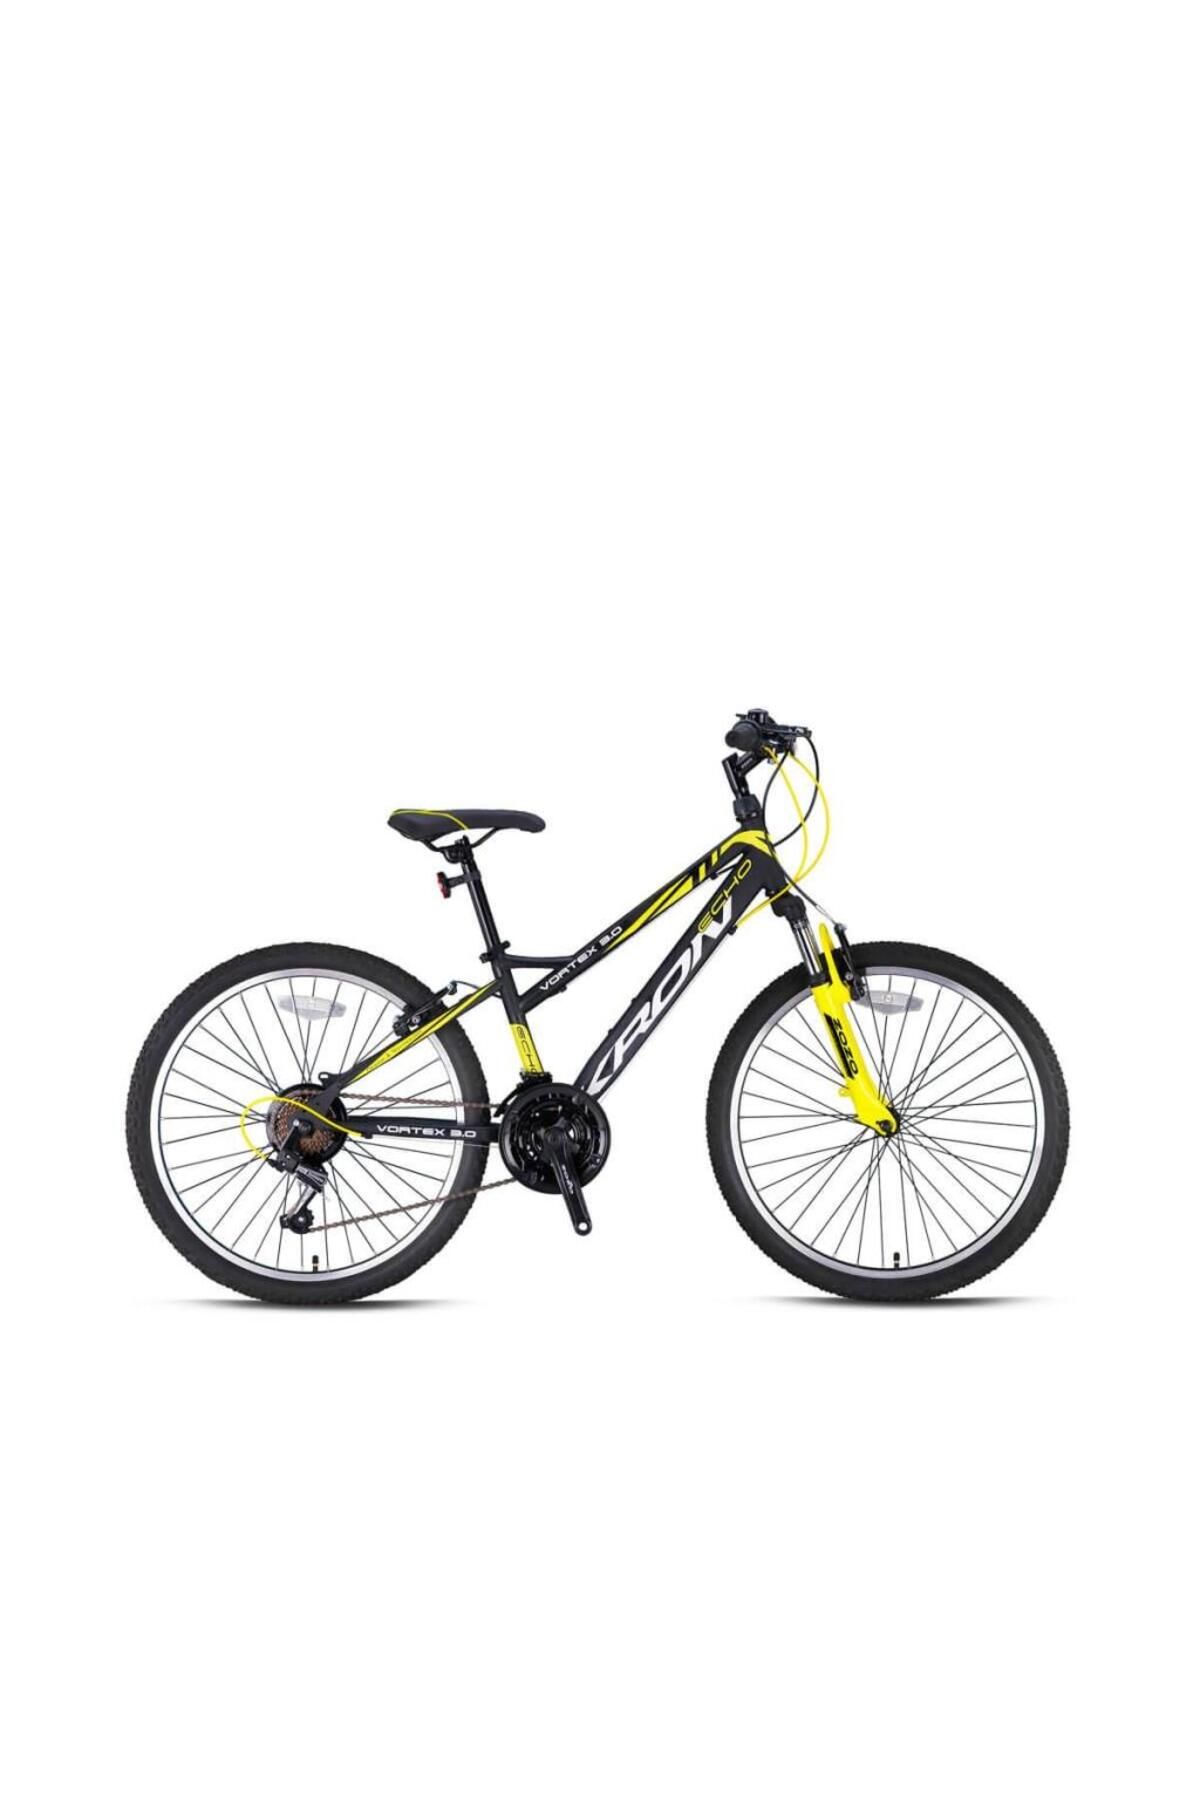 Kron Vortex 3.0 Çocuk Bisikleti 24 Jant Mat Siyah - Sarı